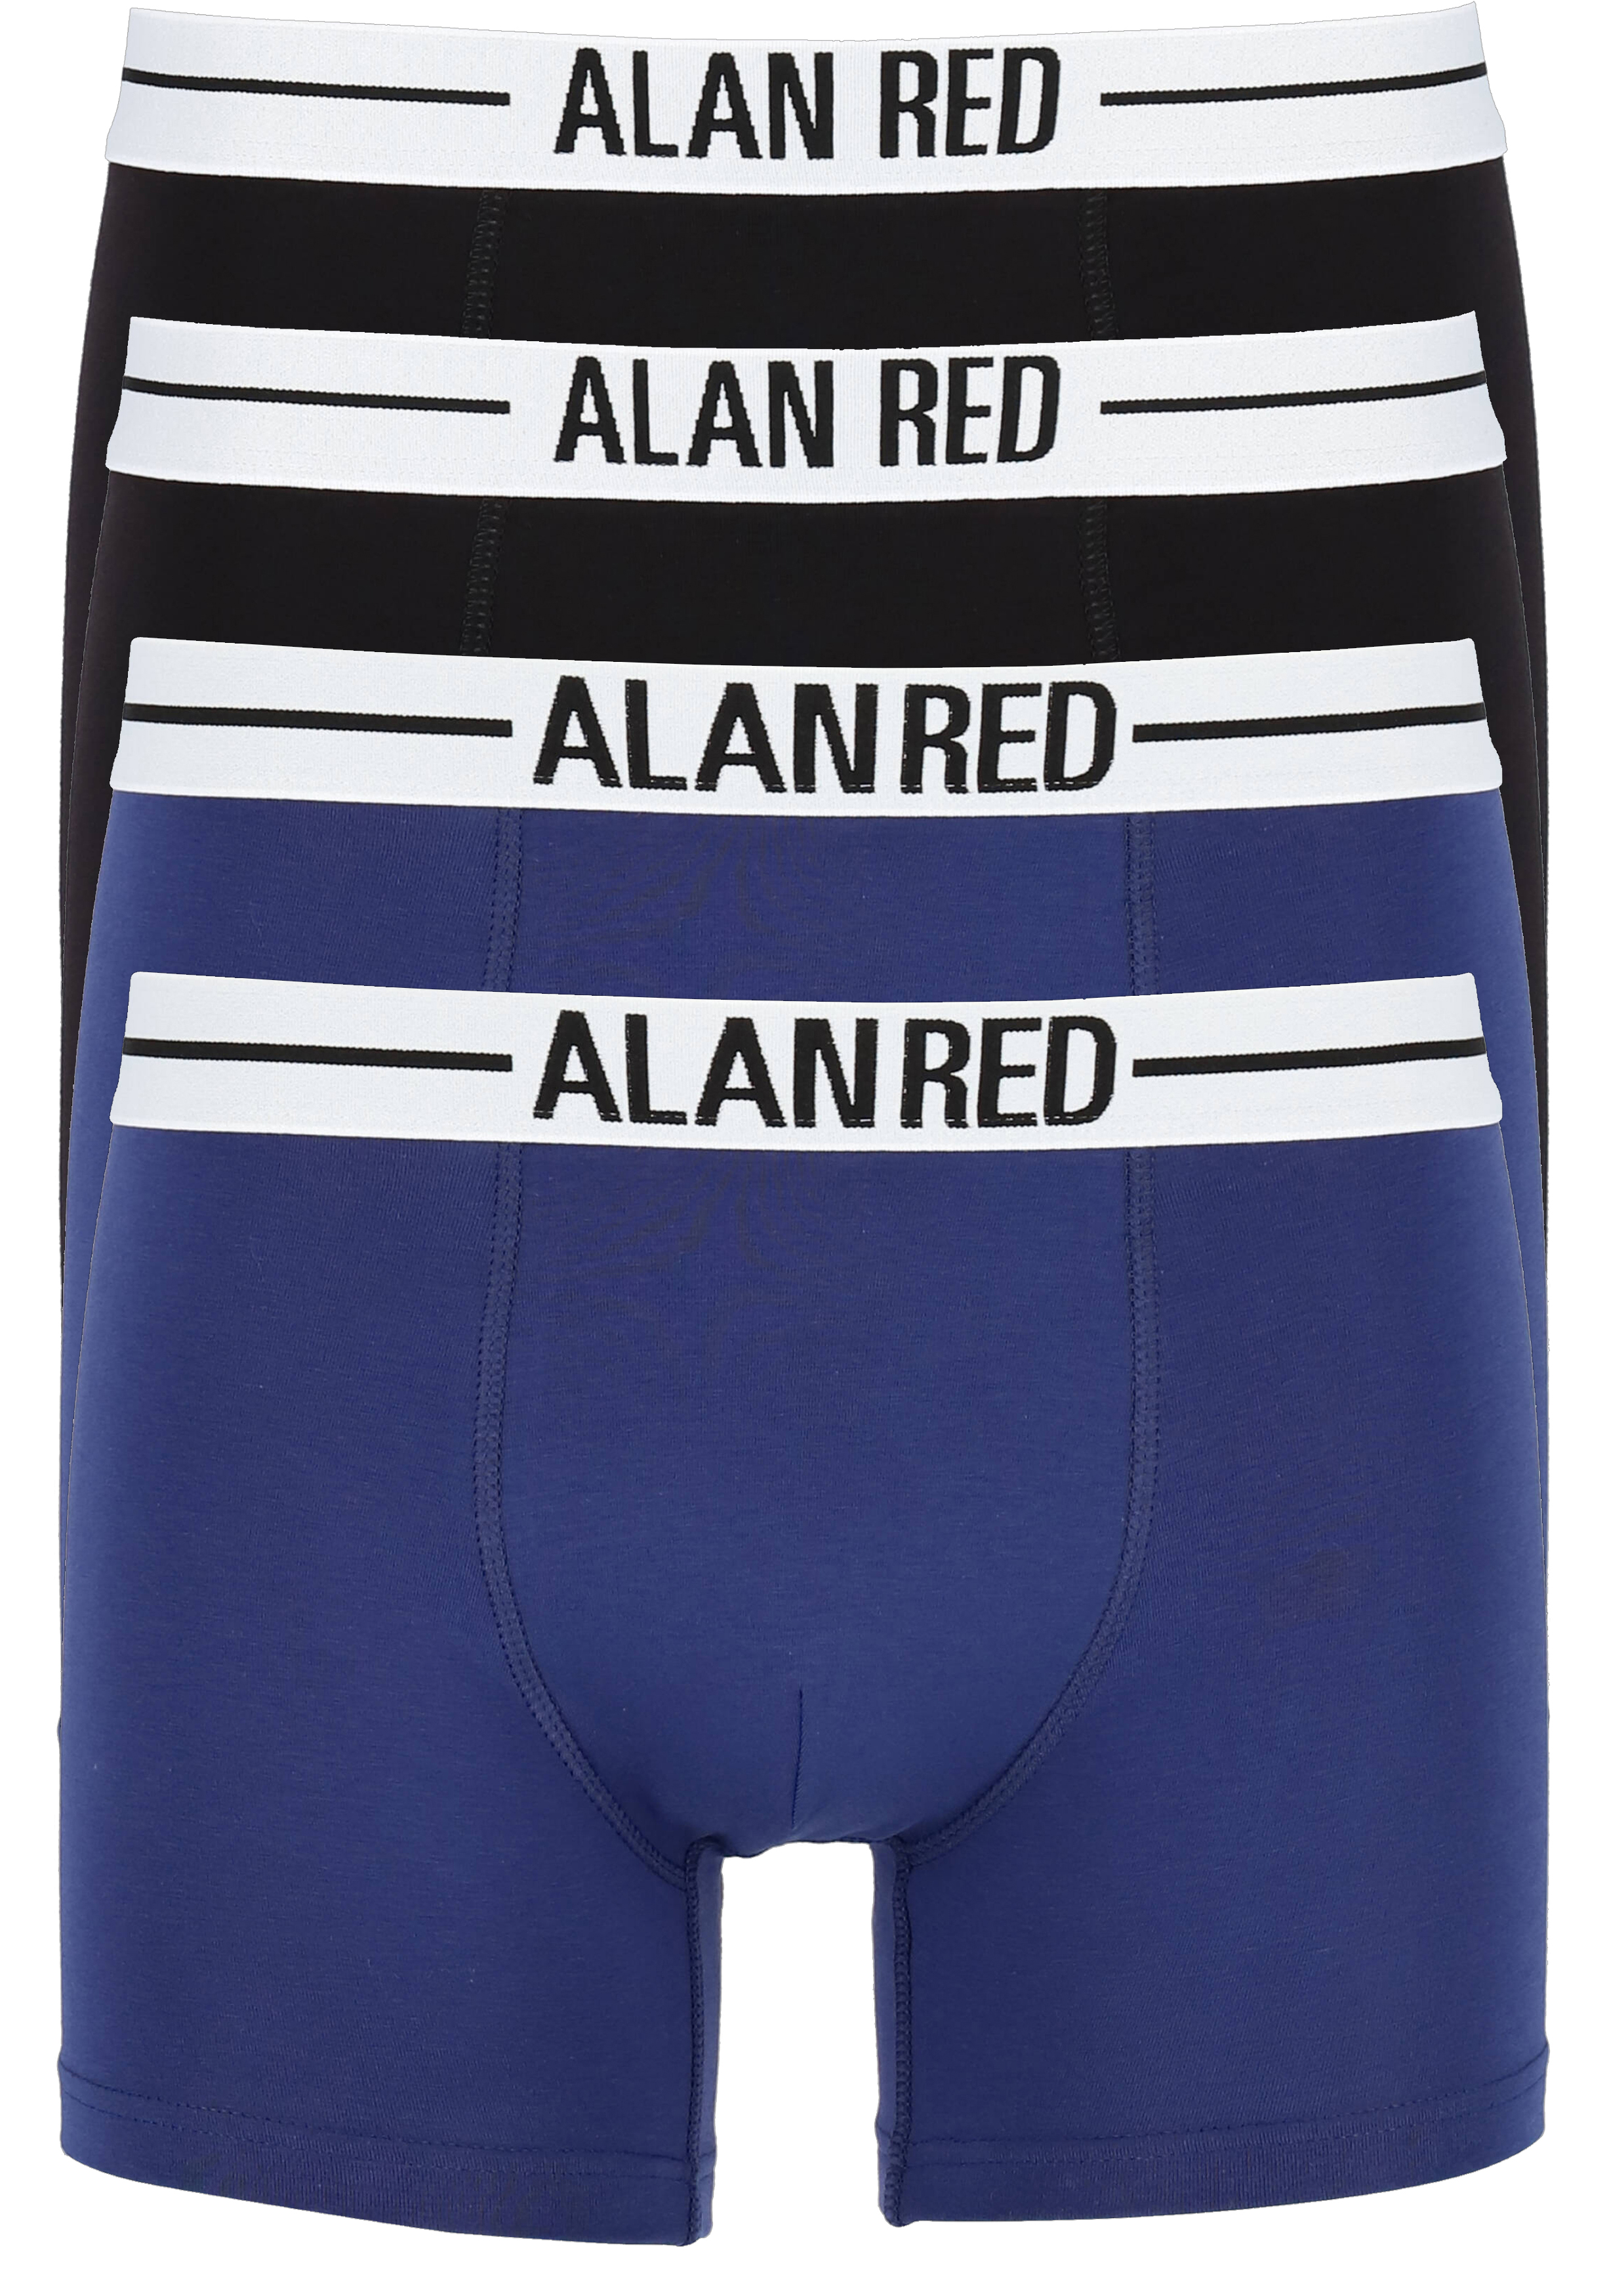 Elementair stof in de ogen gooien gebruiker ALAN RED boxershorts (4-pack), zwart / blauw - Shop de nieuwste  voorjaarsmode